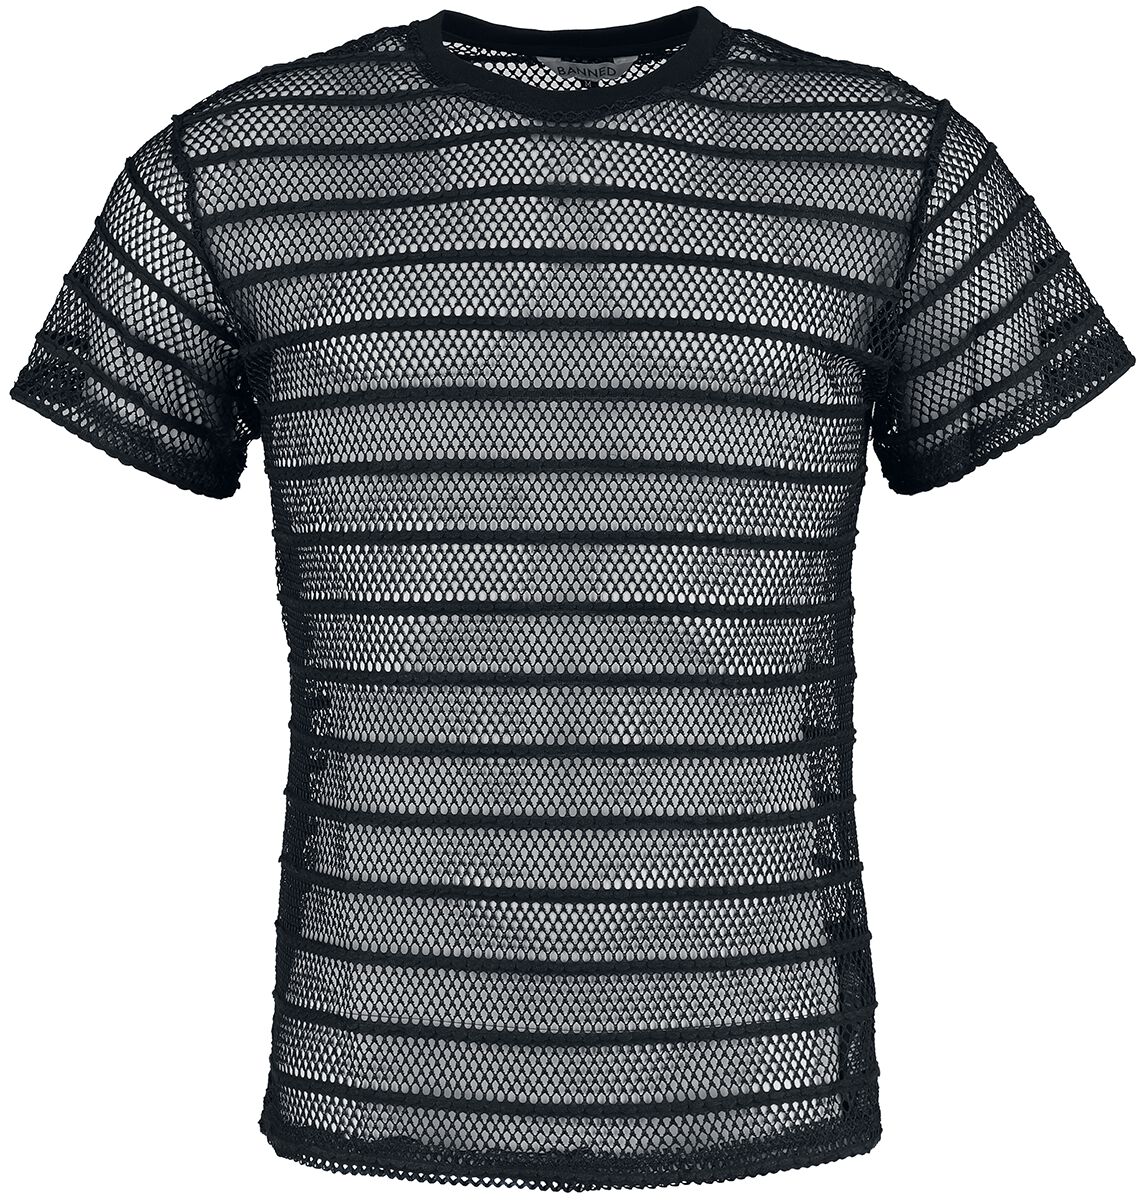 Banned Alternative - Gothic T-Shirt - Black Mesh Shirt - S bis XXL - für Männer - Größe M - schwarz